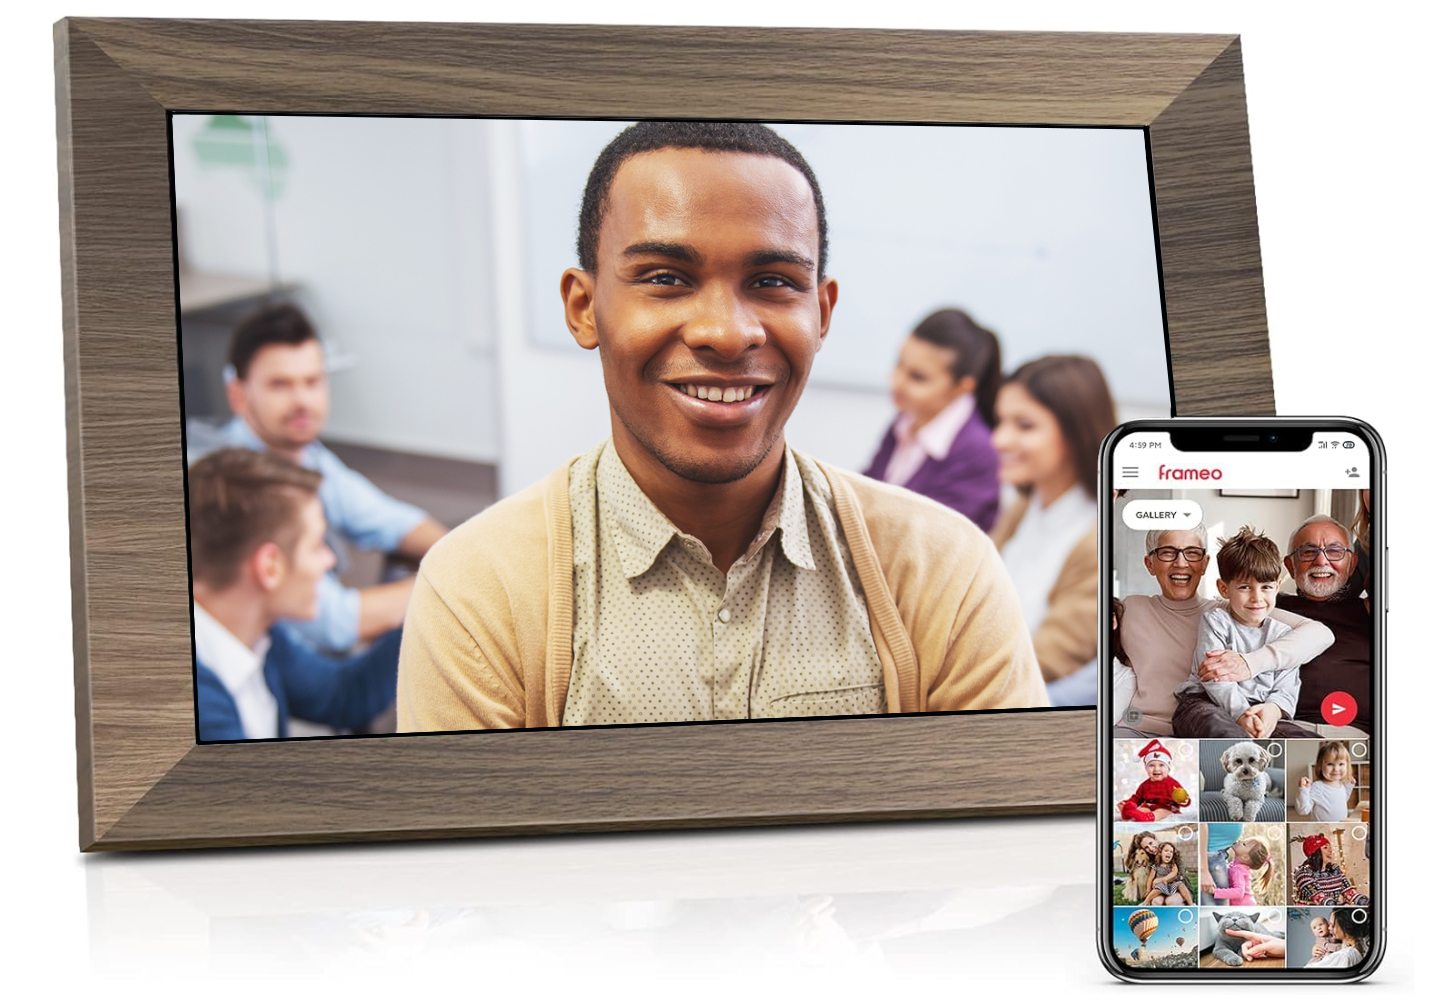 Le cadre photo numérique WiFi Canupdog 10.1 : une innovation captivante  pour renforcer l'engagement des employés et cultiver l'esprit d'équipe -  Emplois spécialisés